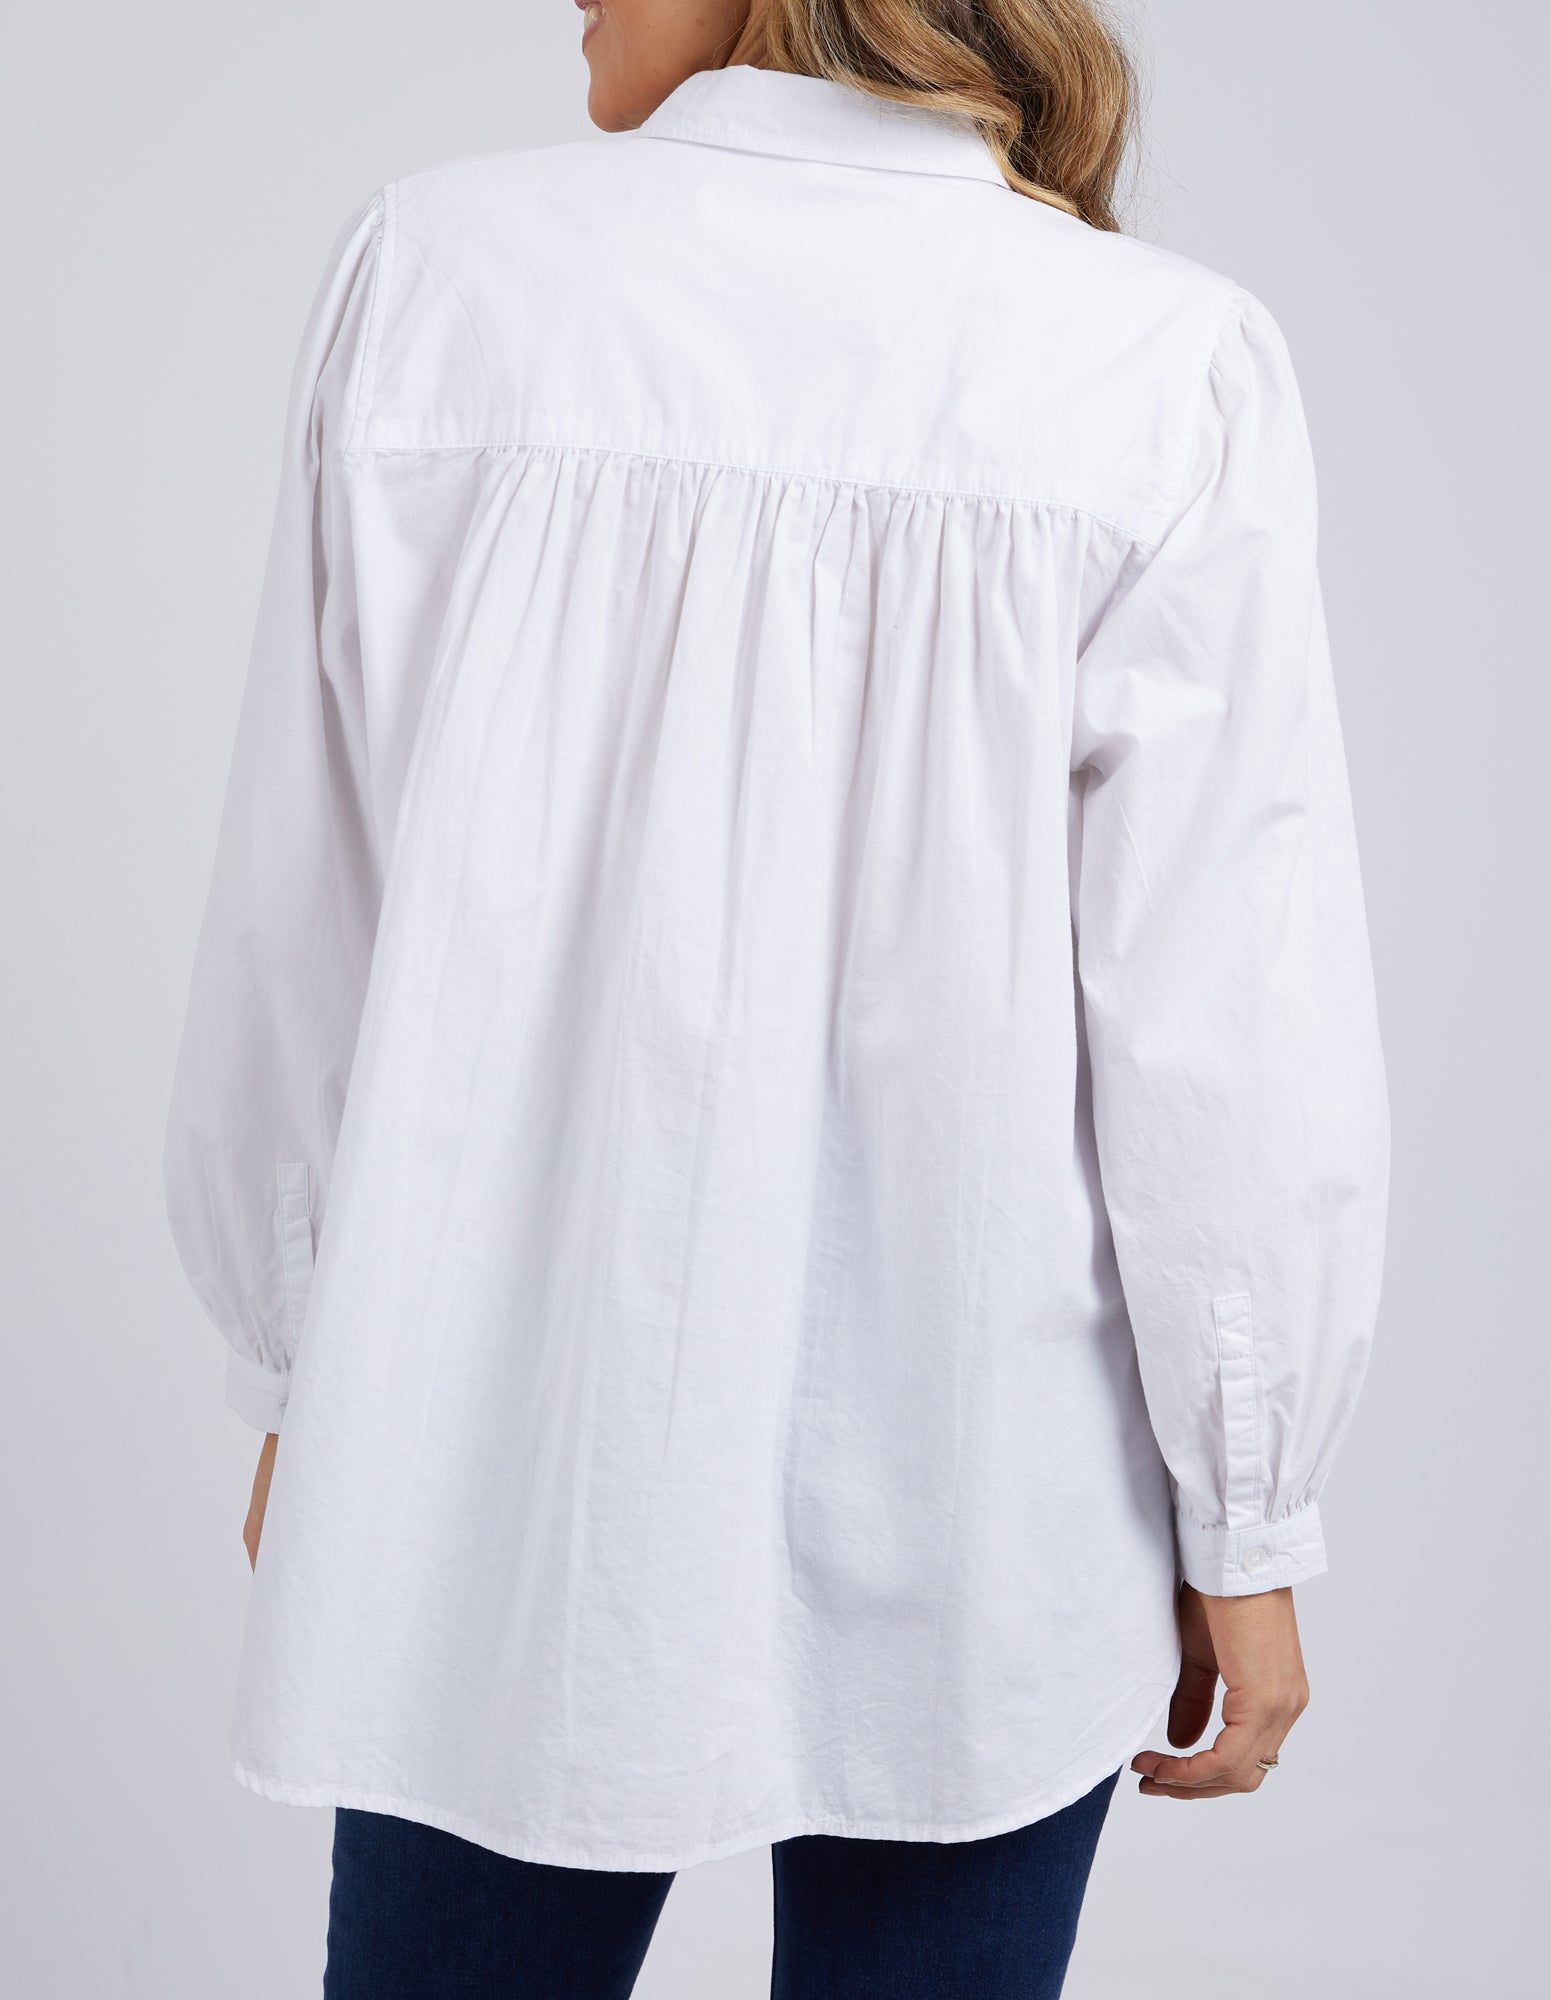 Elm Gabriella Shirt White